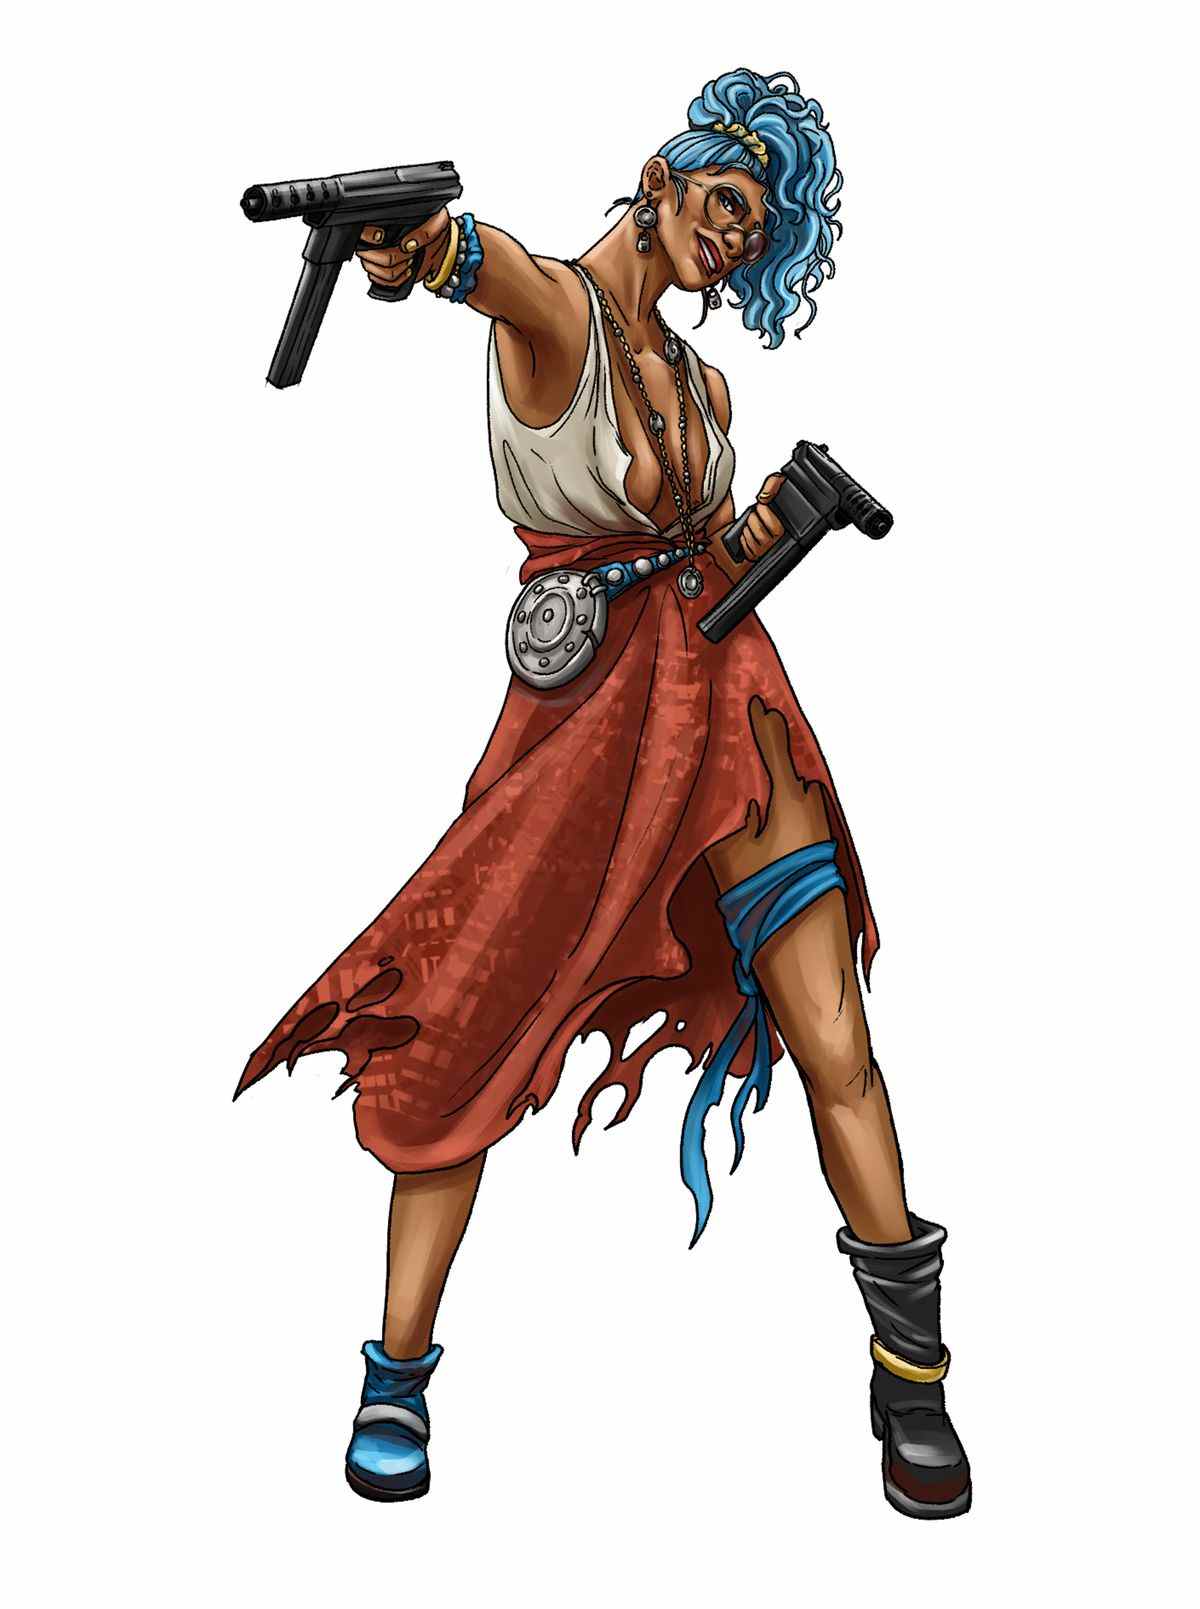 Une femme fringante aux cheveux bleus et aux vêtements dépareillés se déchaîne avec un pistolet automatique.